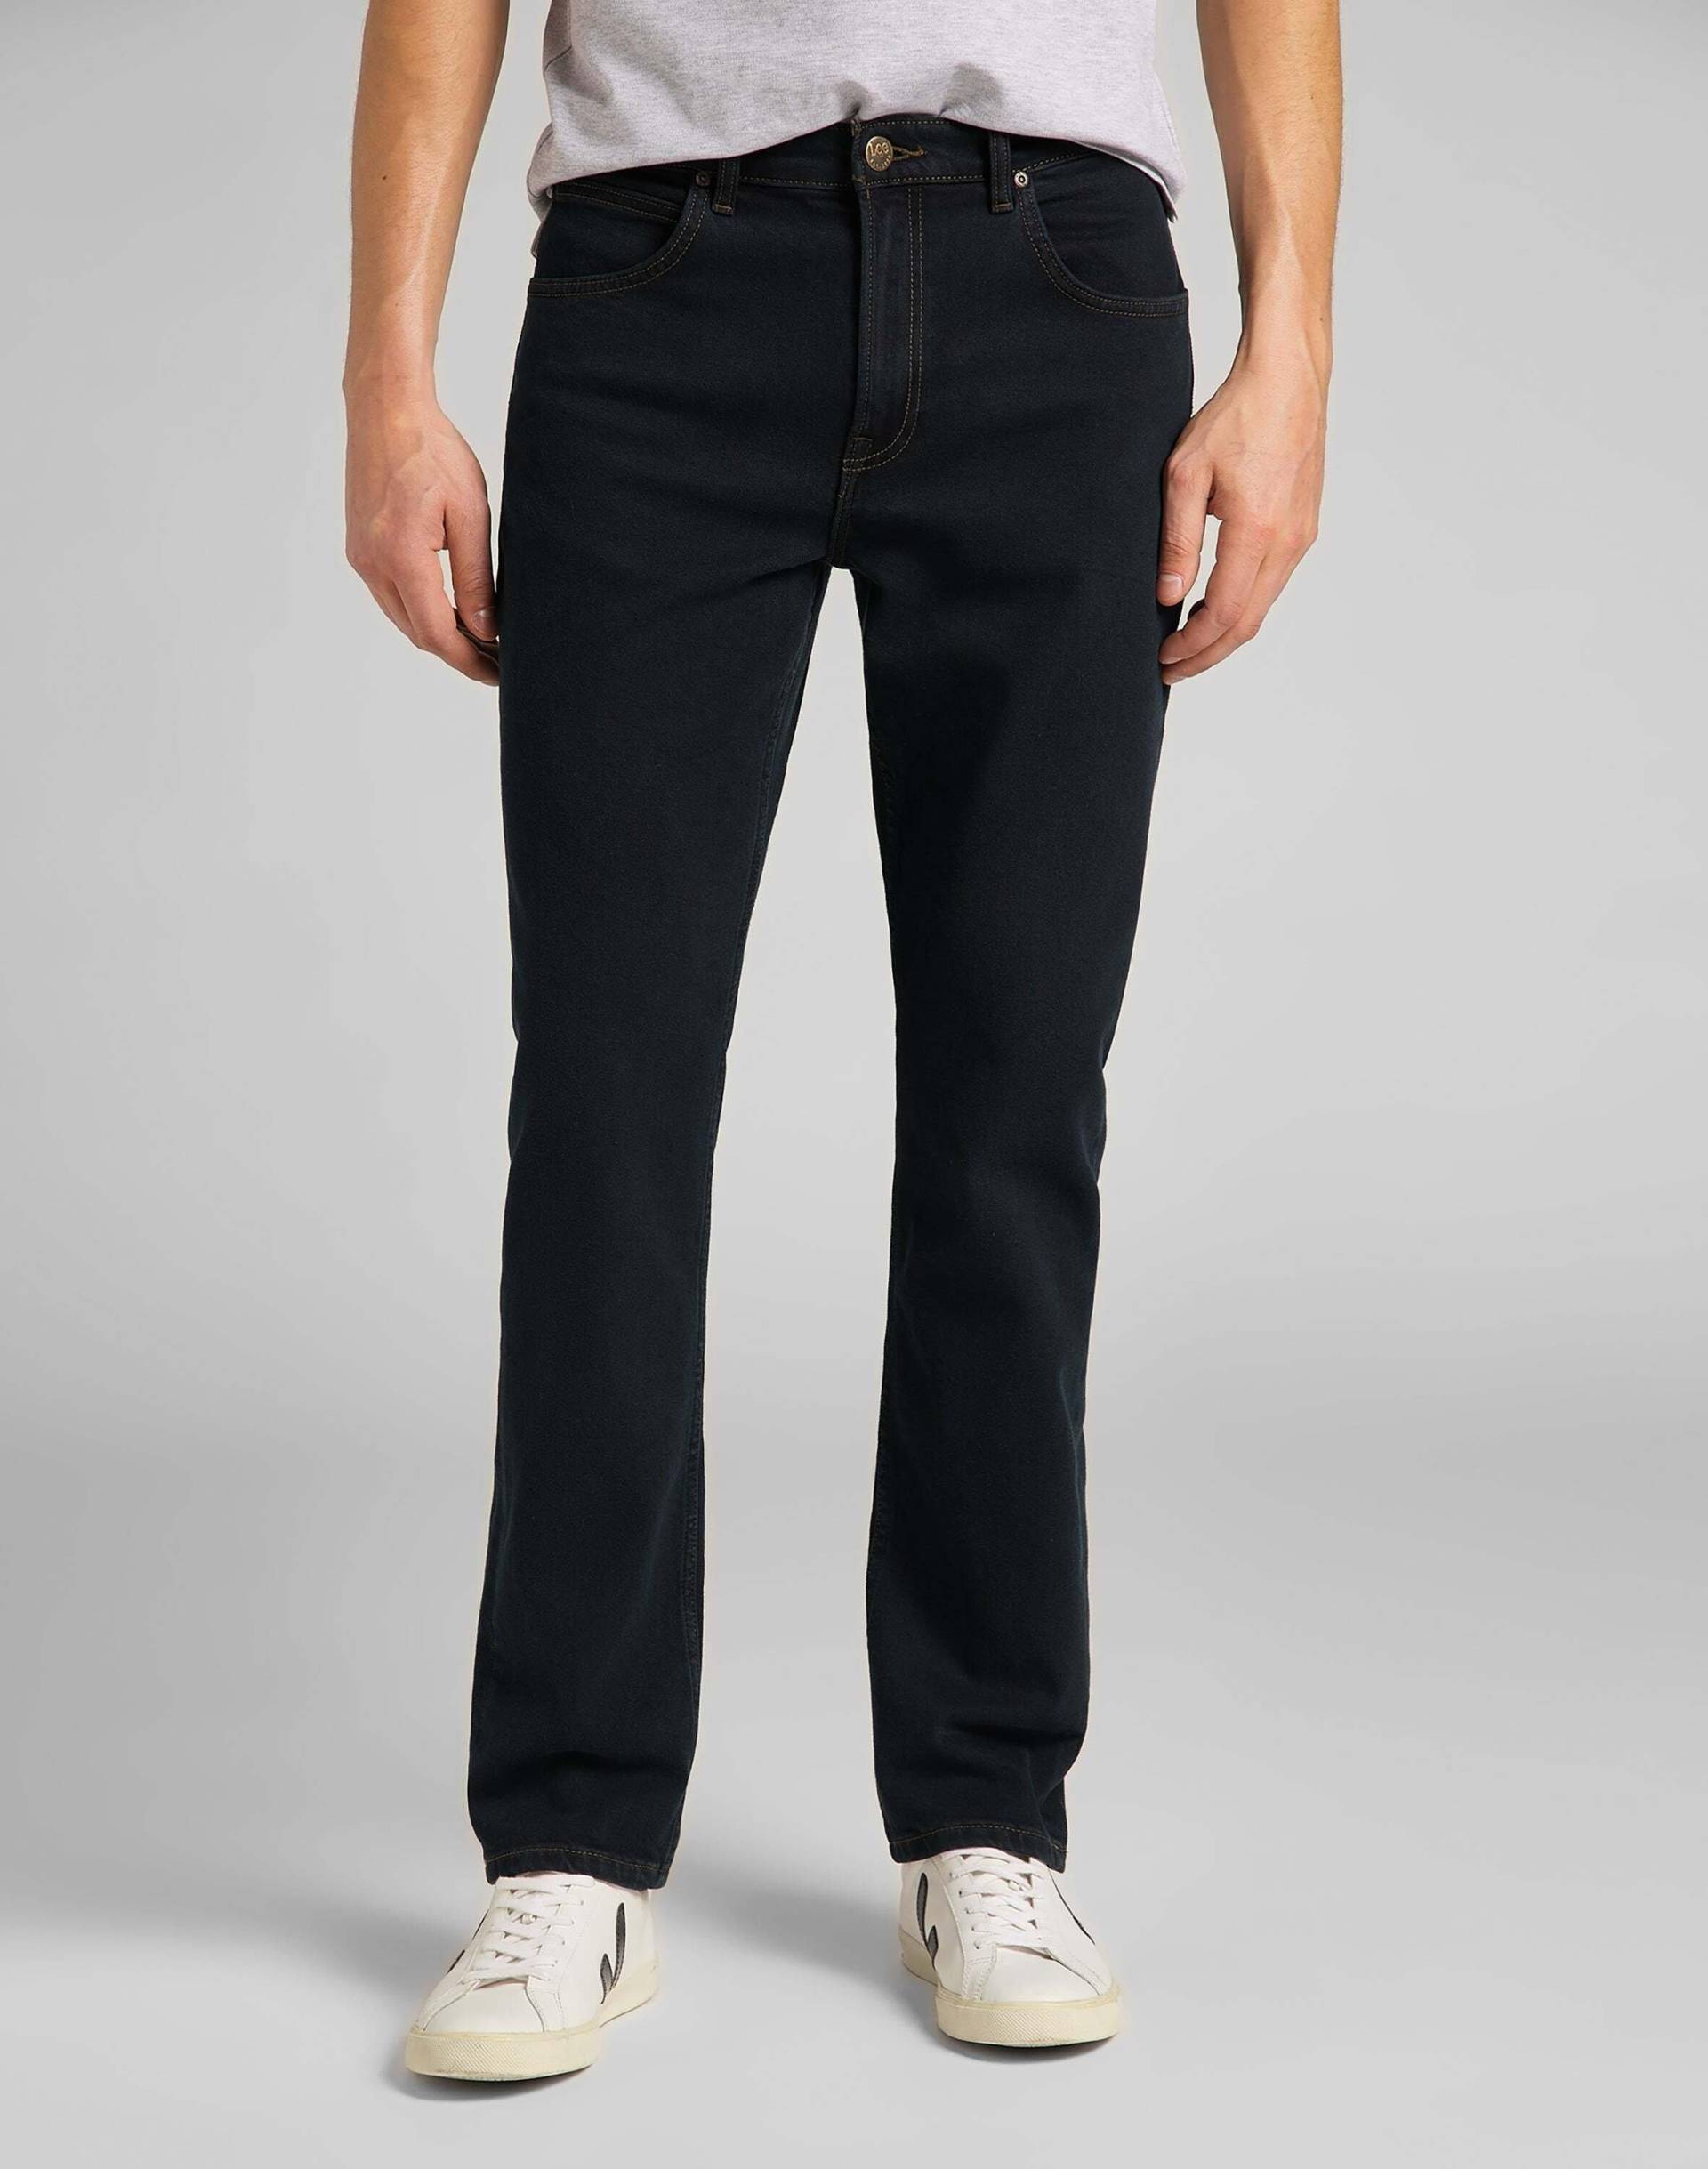 Jeans Straight Leg Brooklyn Herren Blau Denim L34/W40 von Lee